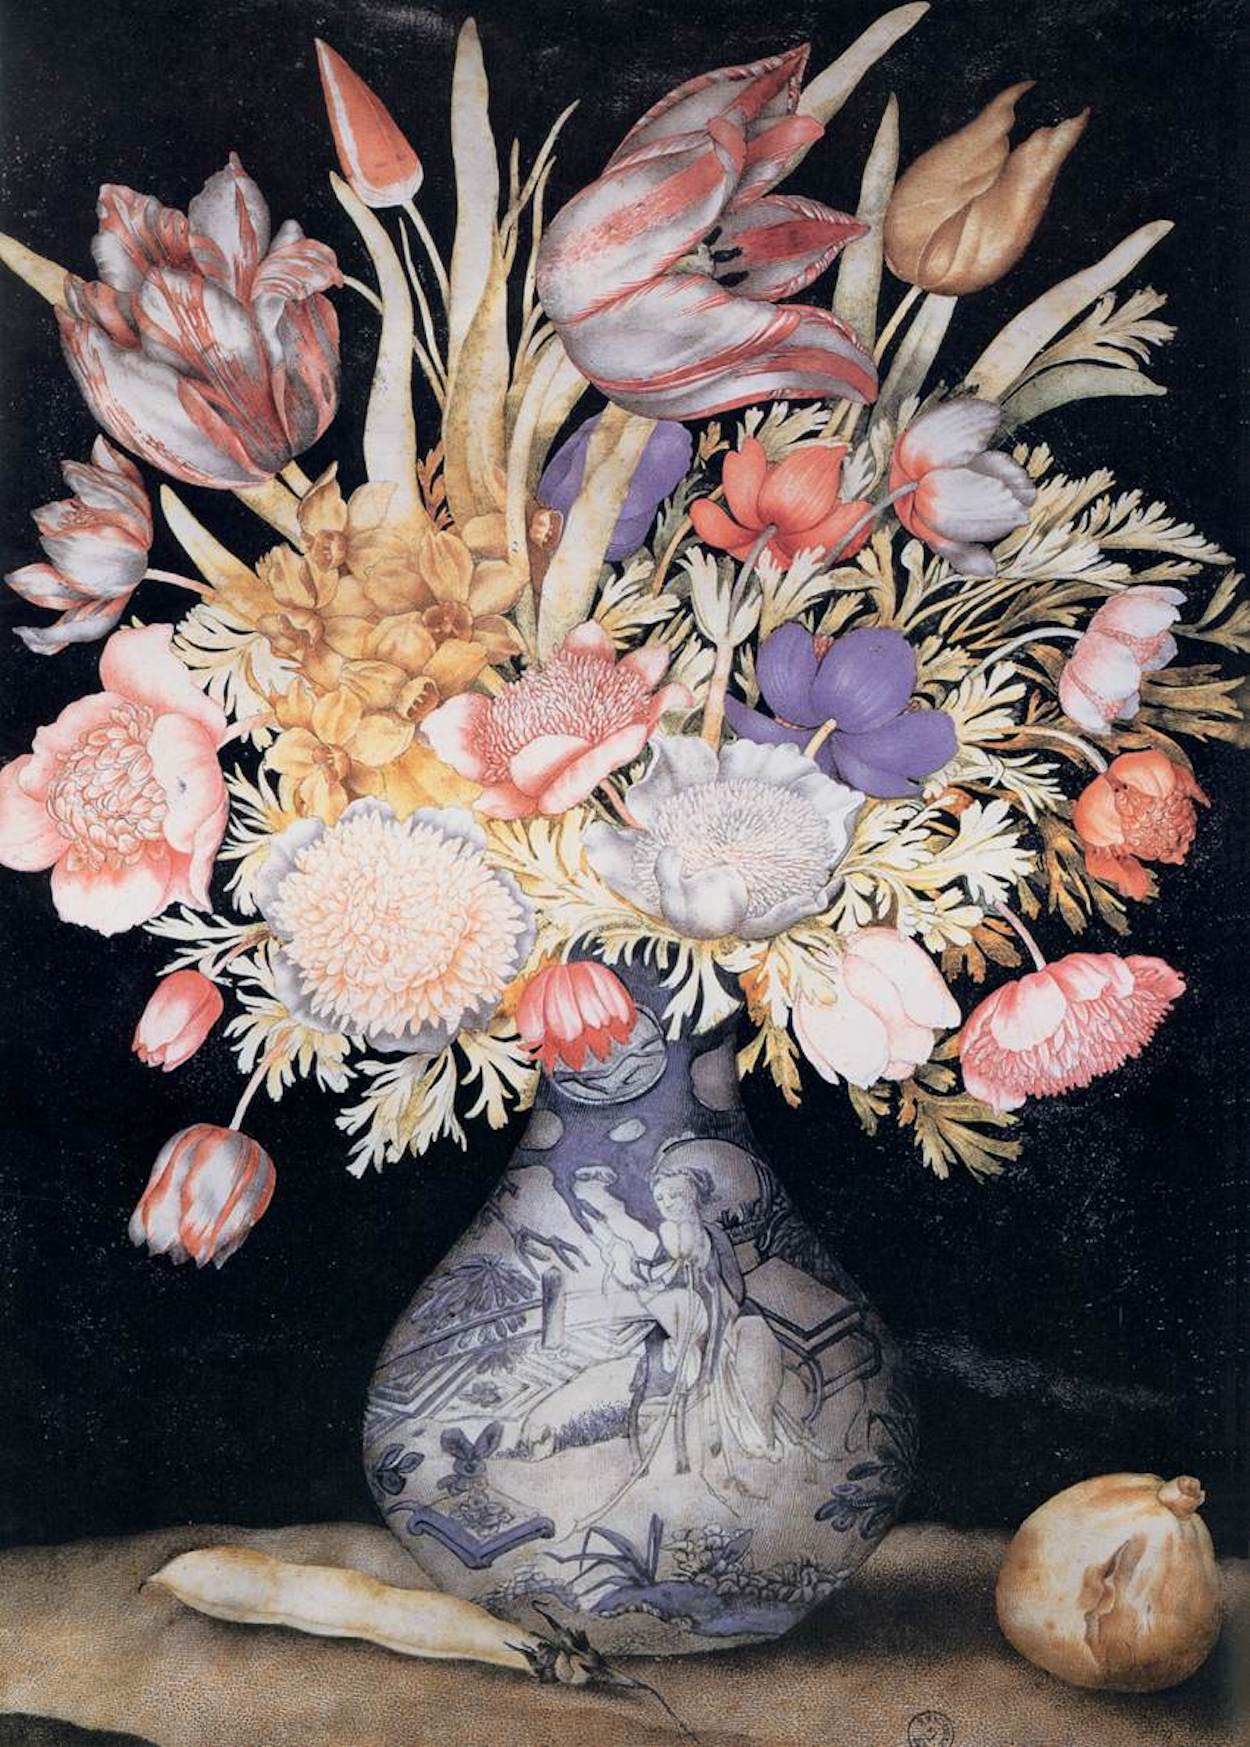 Chinesische Vase mit Blumen und Früchten by Giovanna Garzoni - ca. 1641–1652 - 51 x 36,9 cm Galleria degli Uffizi (Die Uffizien)